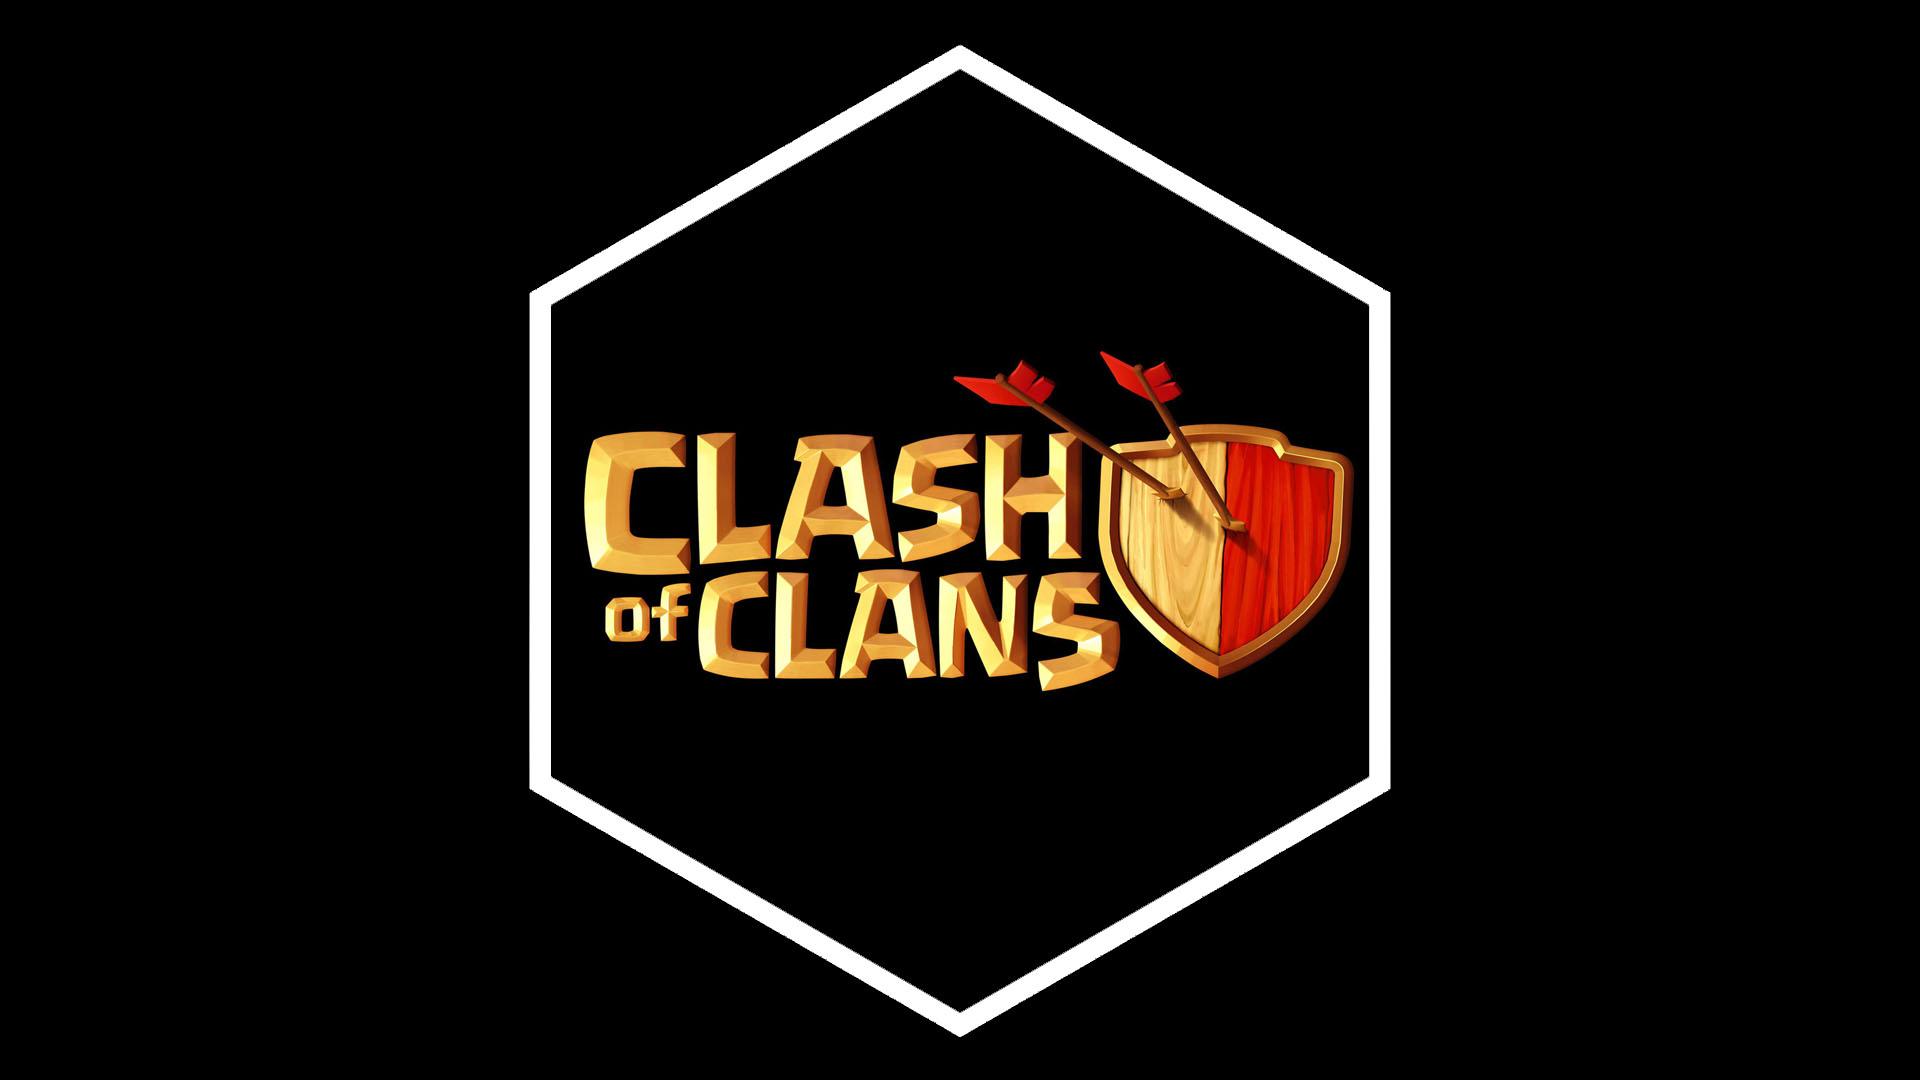 Les astuces pour construire une base solide dans Clash of Clans